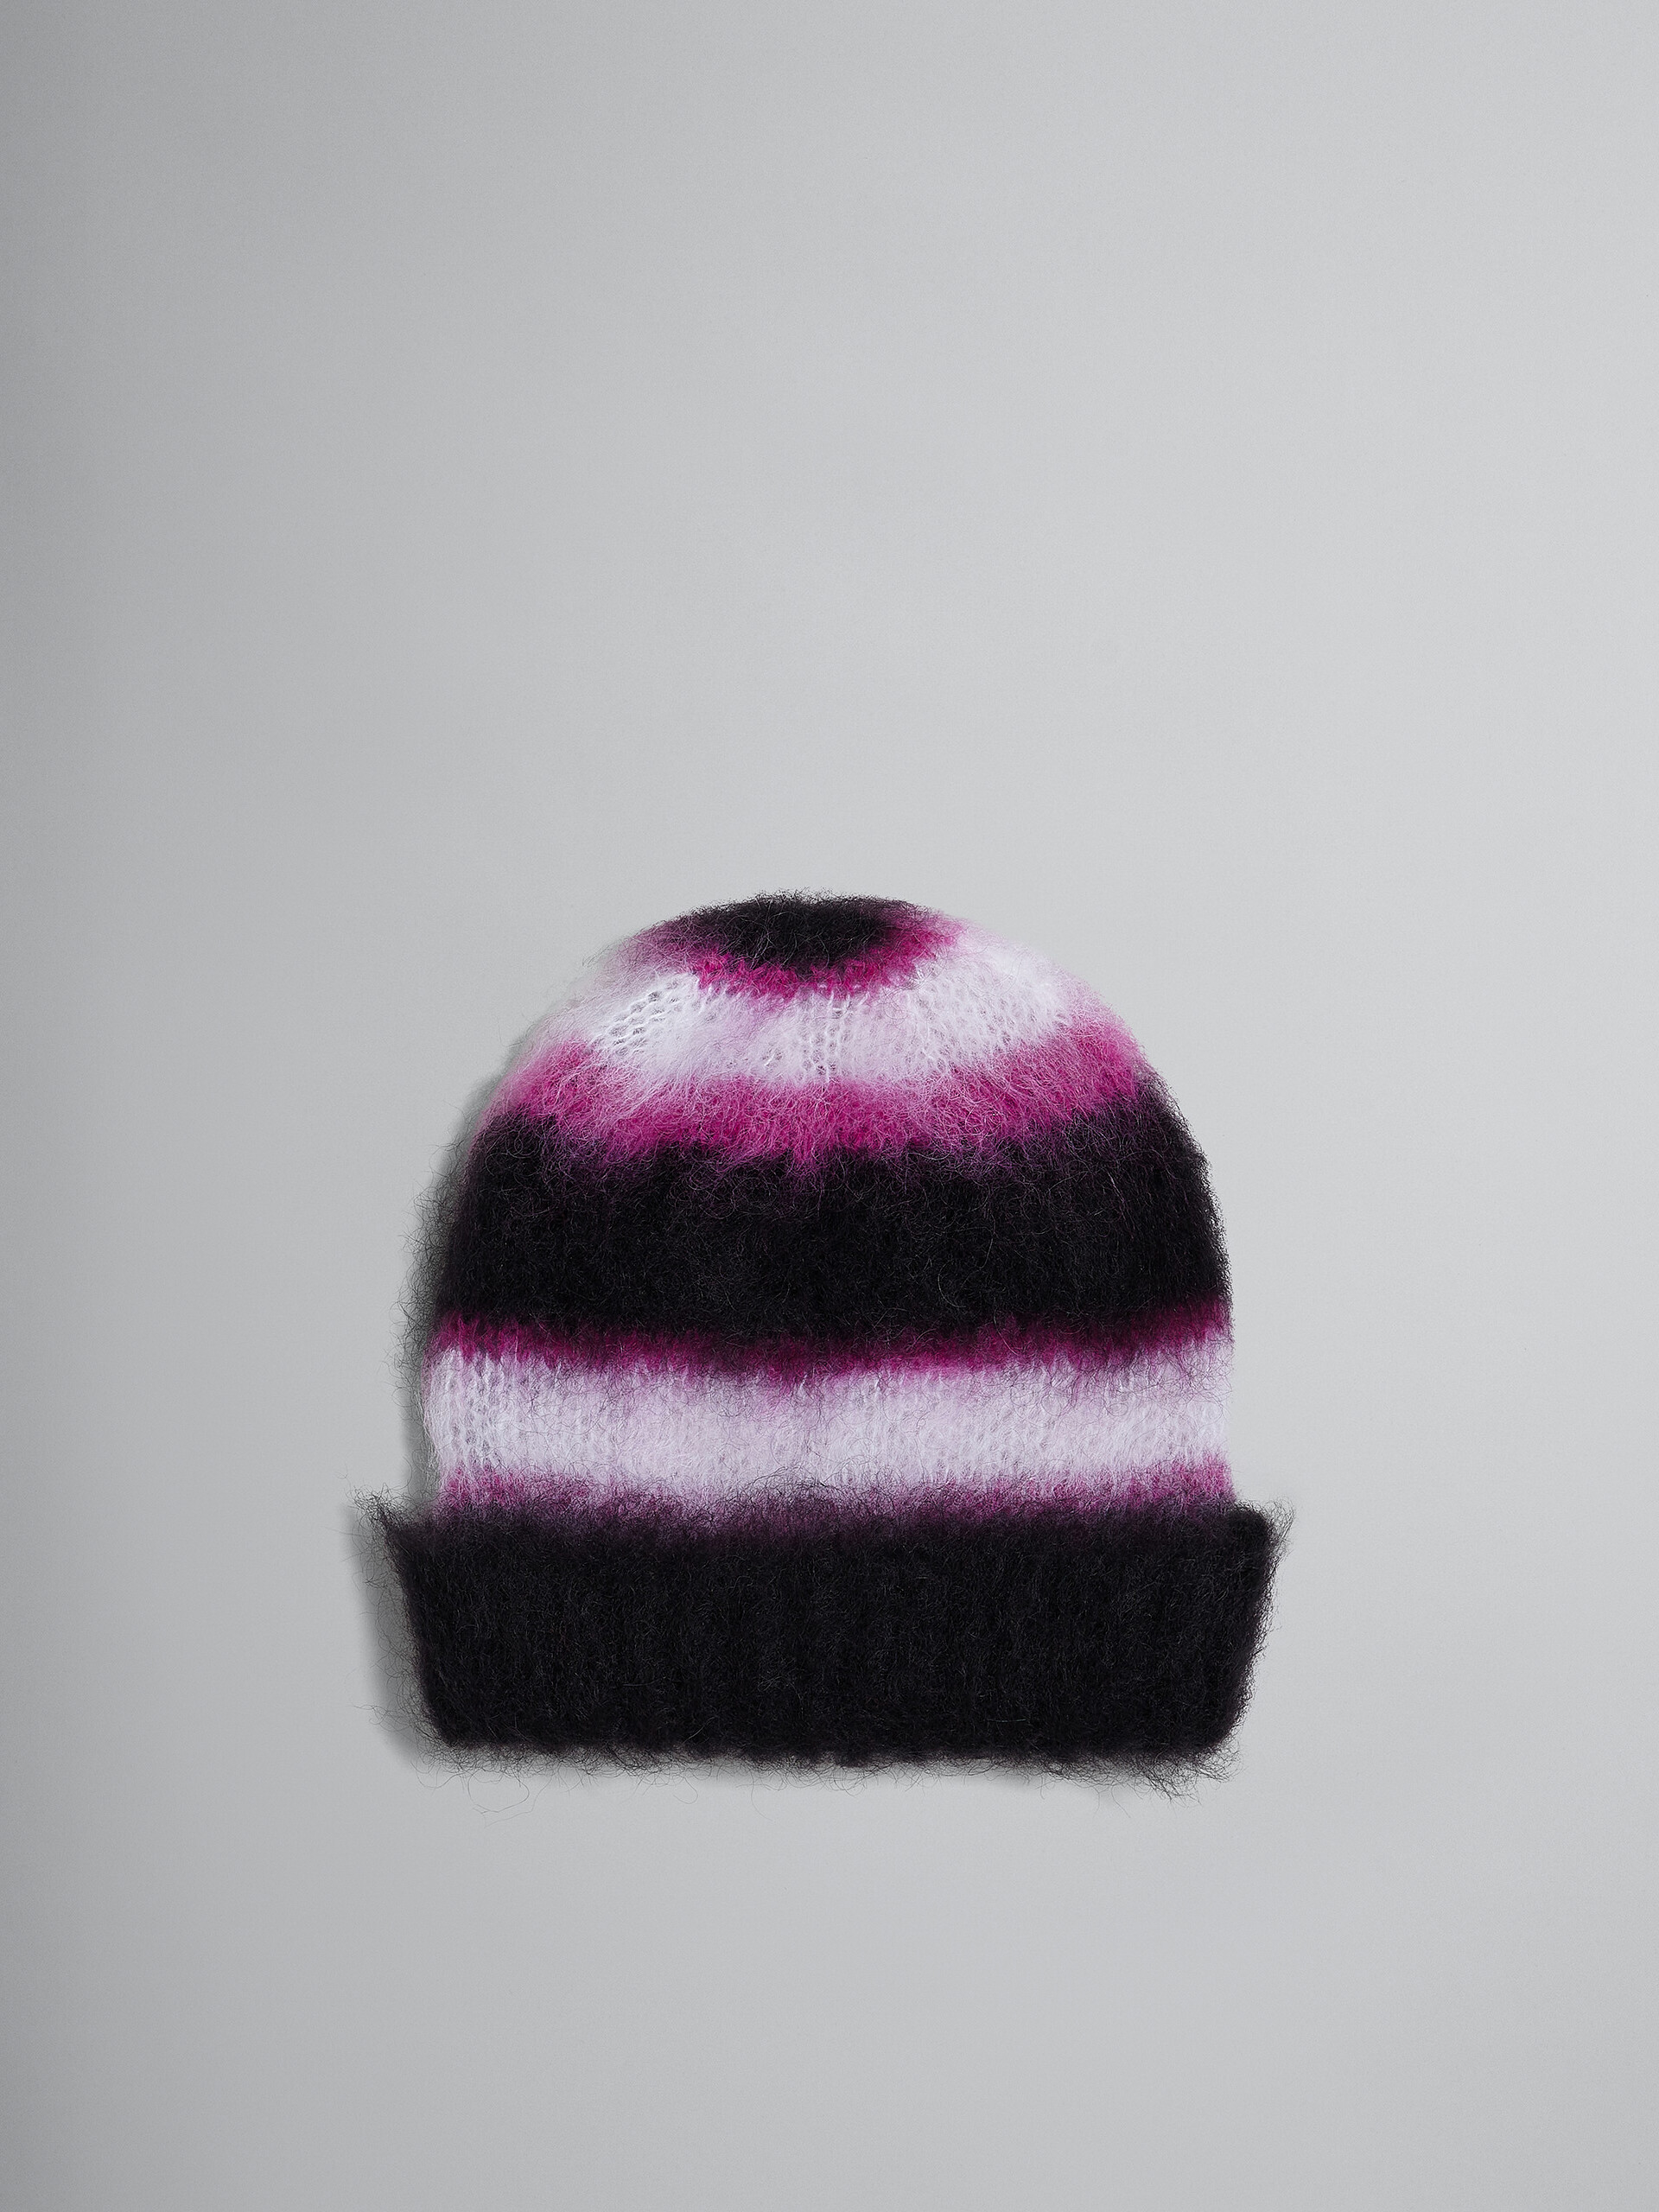 Schwarz gestreifte Mütze aus Mohair und Wolle - Hüte - Image 1